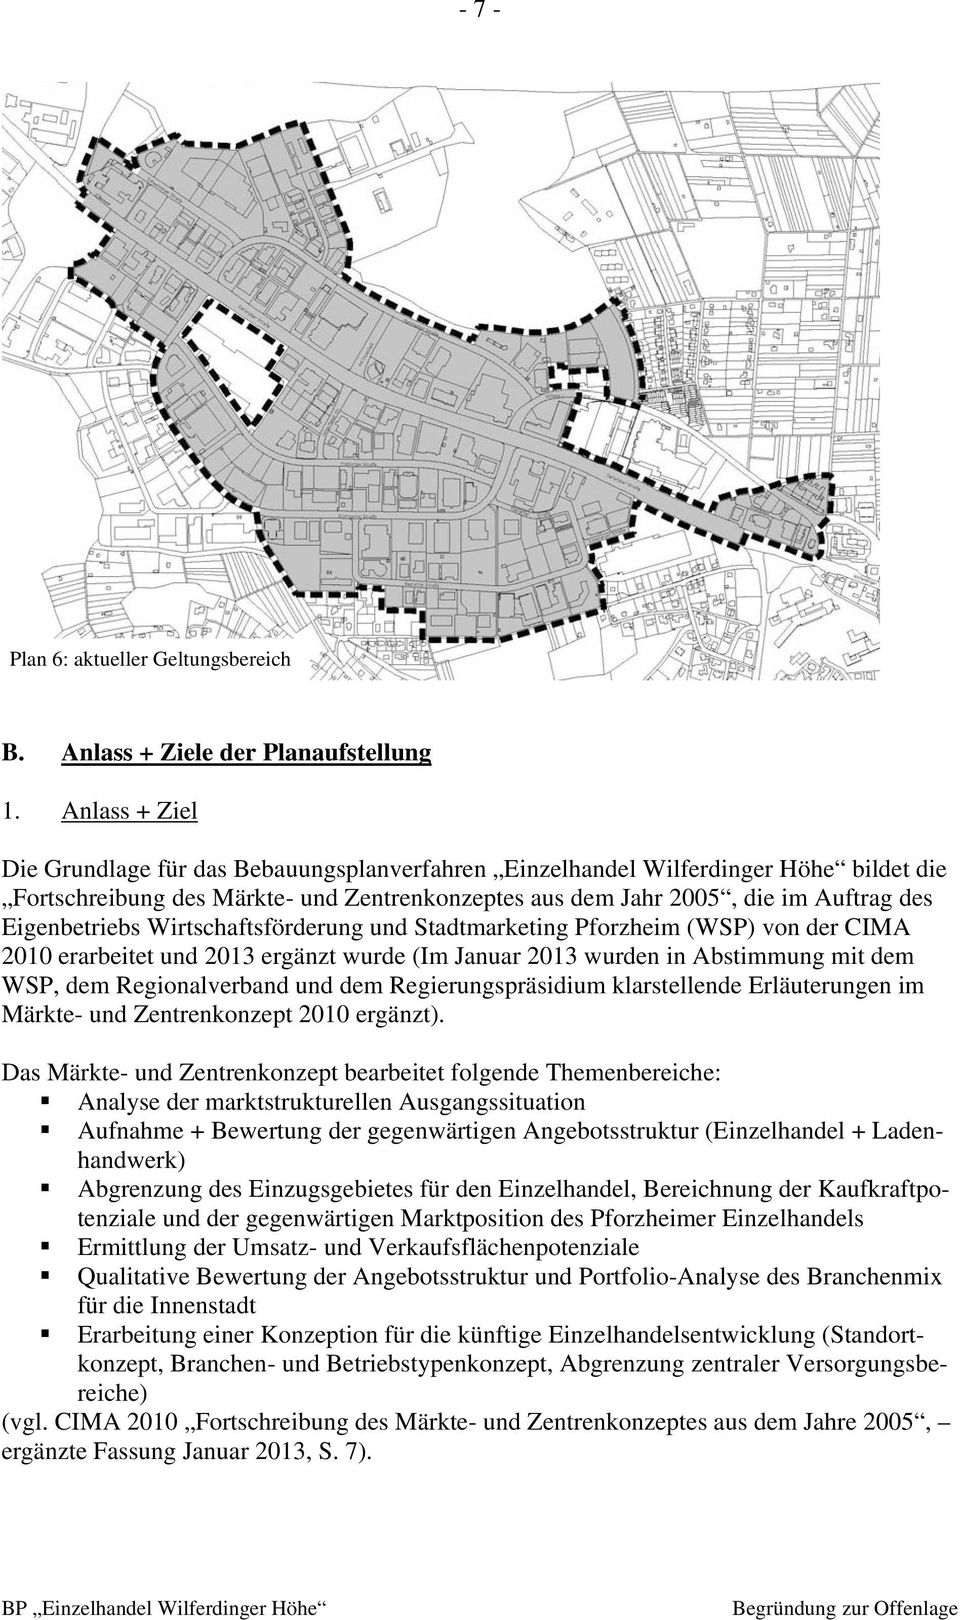 Eigenbetriebs Wirtschaftsförderung und Stadtmarketing Pforzheim (WSP) von der CIMA 2010 erarbeitet und 2013 ergänzt wurde (Im Januar 2013 wurden in Abstimmung mit dem WSP, dem Regionalverband und dem